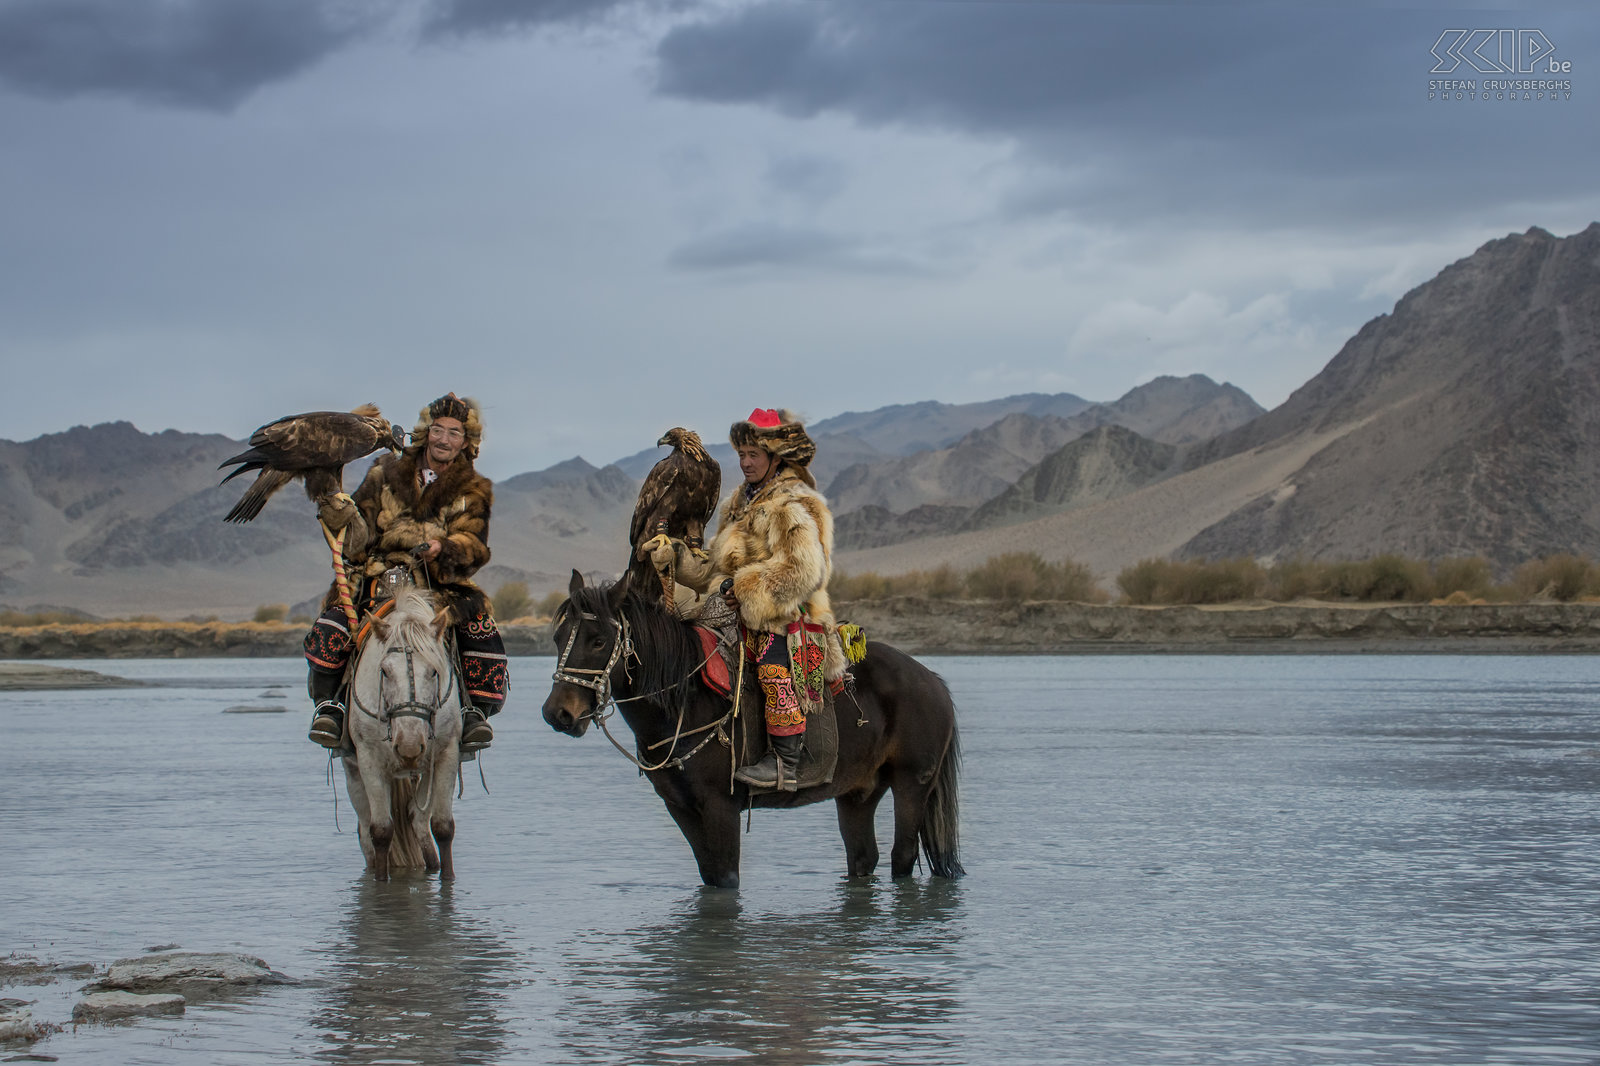 Ulgii - Golden Eagle Festival - Arendjagers Twee Kazakse arendjagers laten hun paarden drinken in de rivier na de eerste dag van de Golden Eagle festival in het Altai gebergte in Mongolië. Stefan Cruysberghs